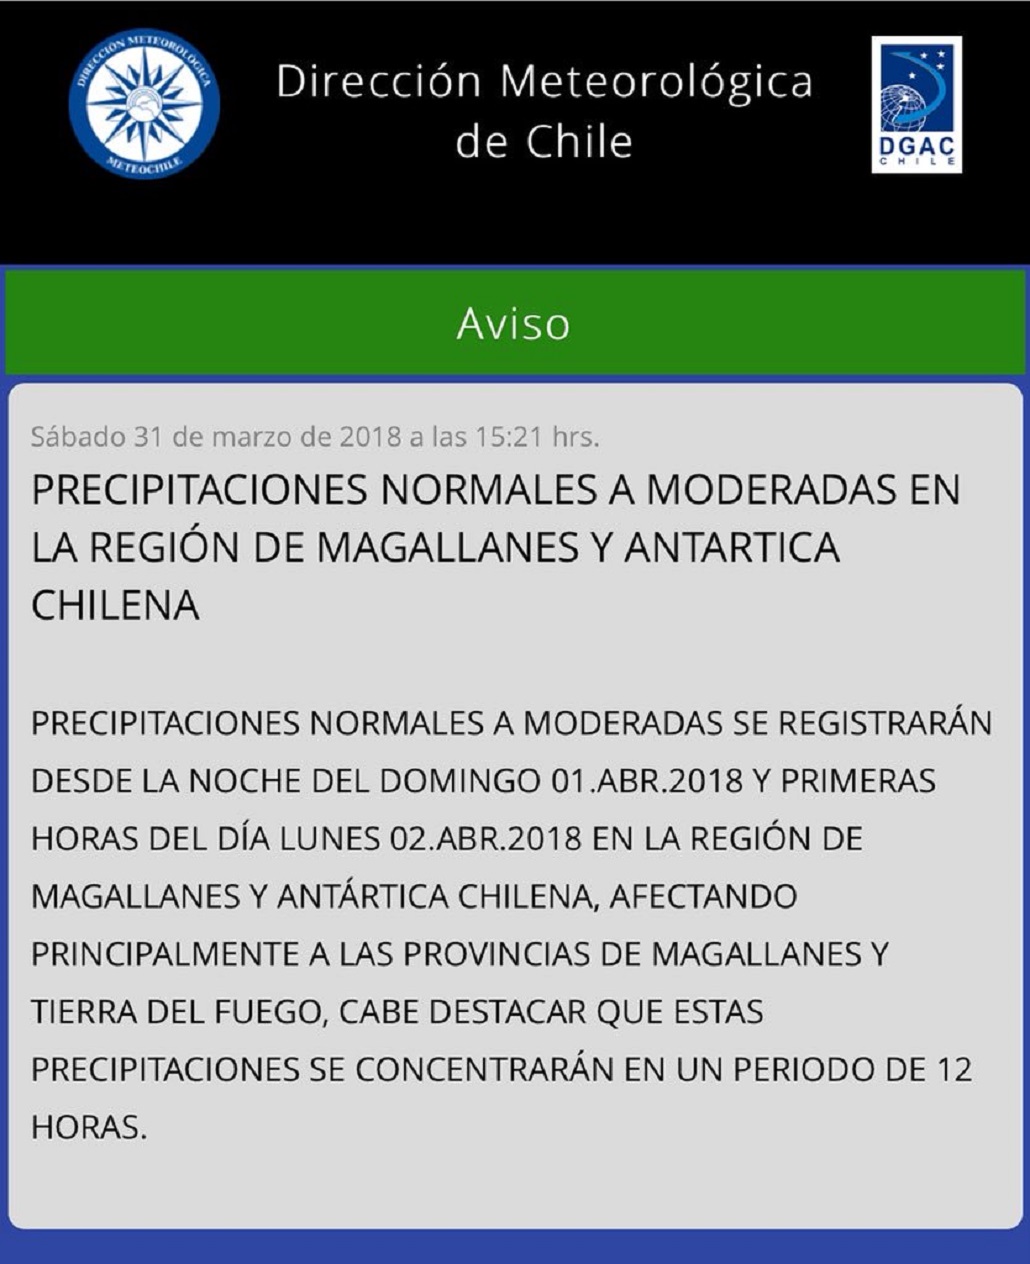 Pronostican lluvias moderadas en Magallanes la noche del domingo y mañana del lunes próximos